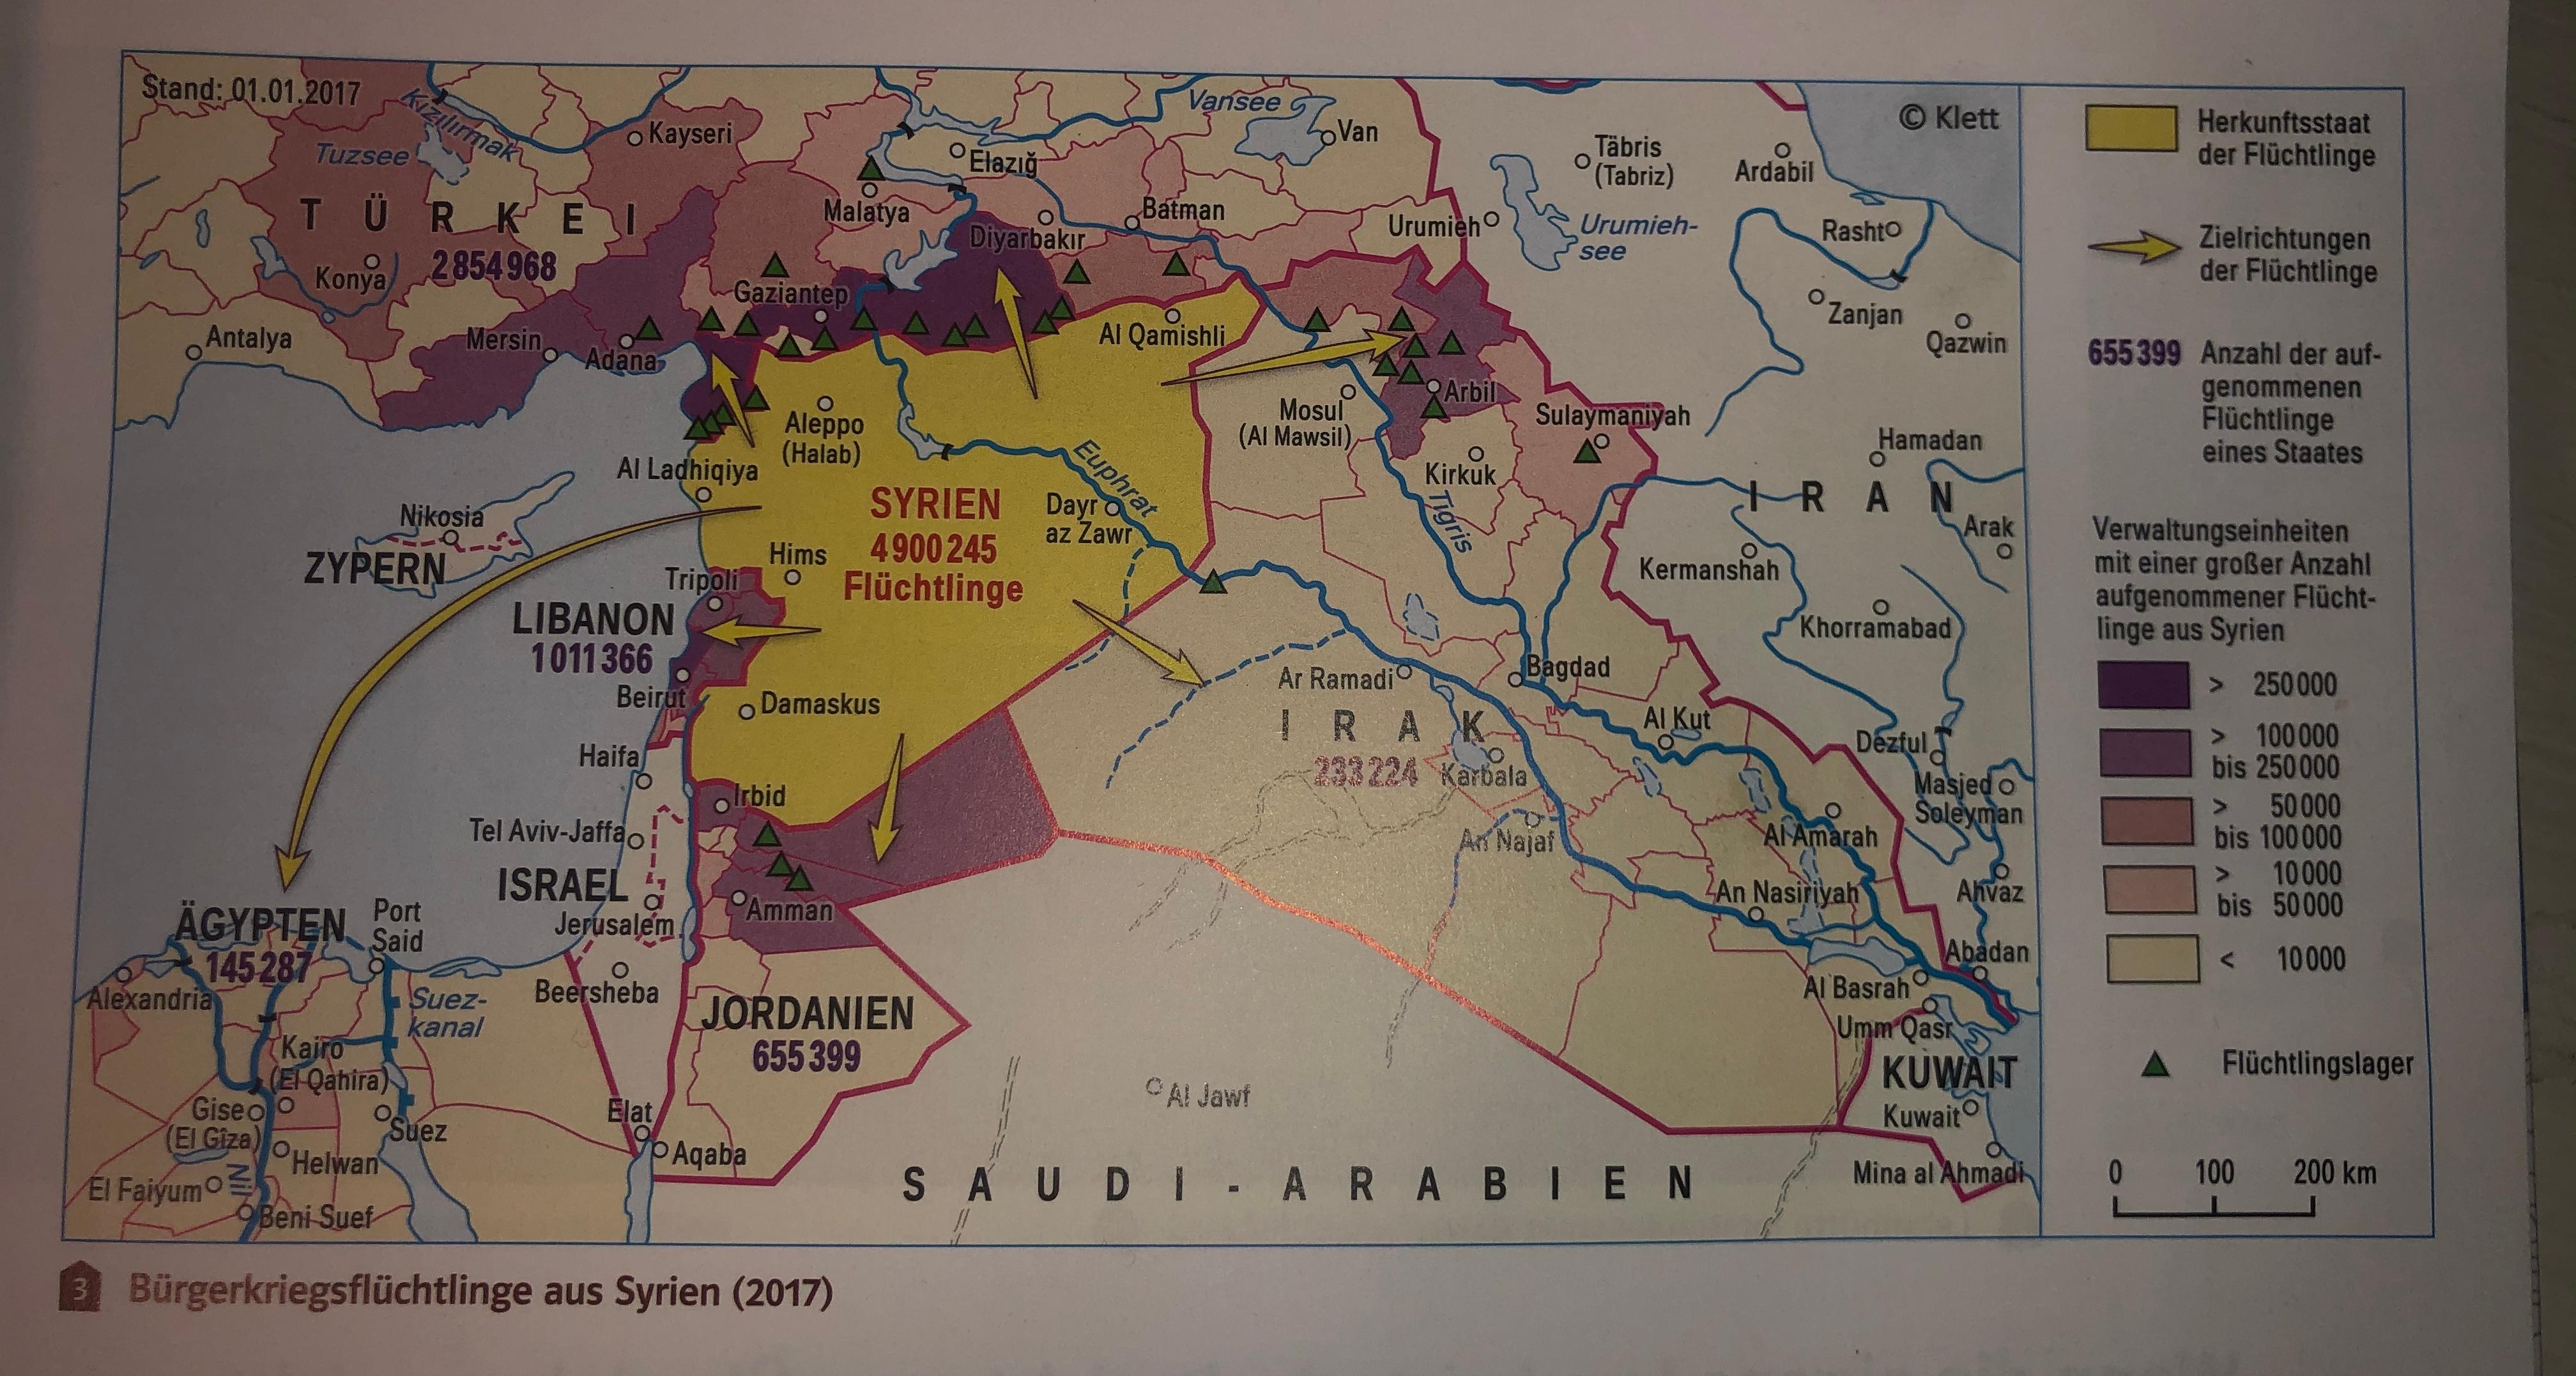 Kann Mir Jemand Die Karte Auswerten Erdkunde Karten Fluchtlinge Syrien